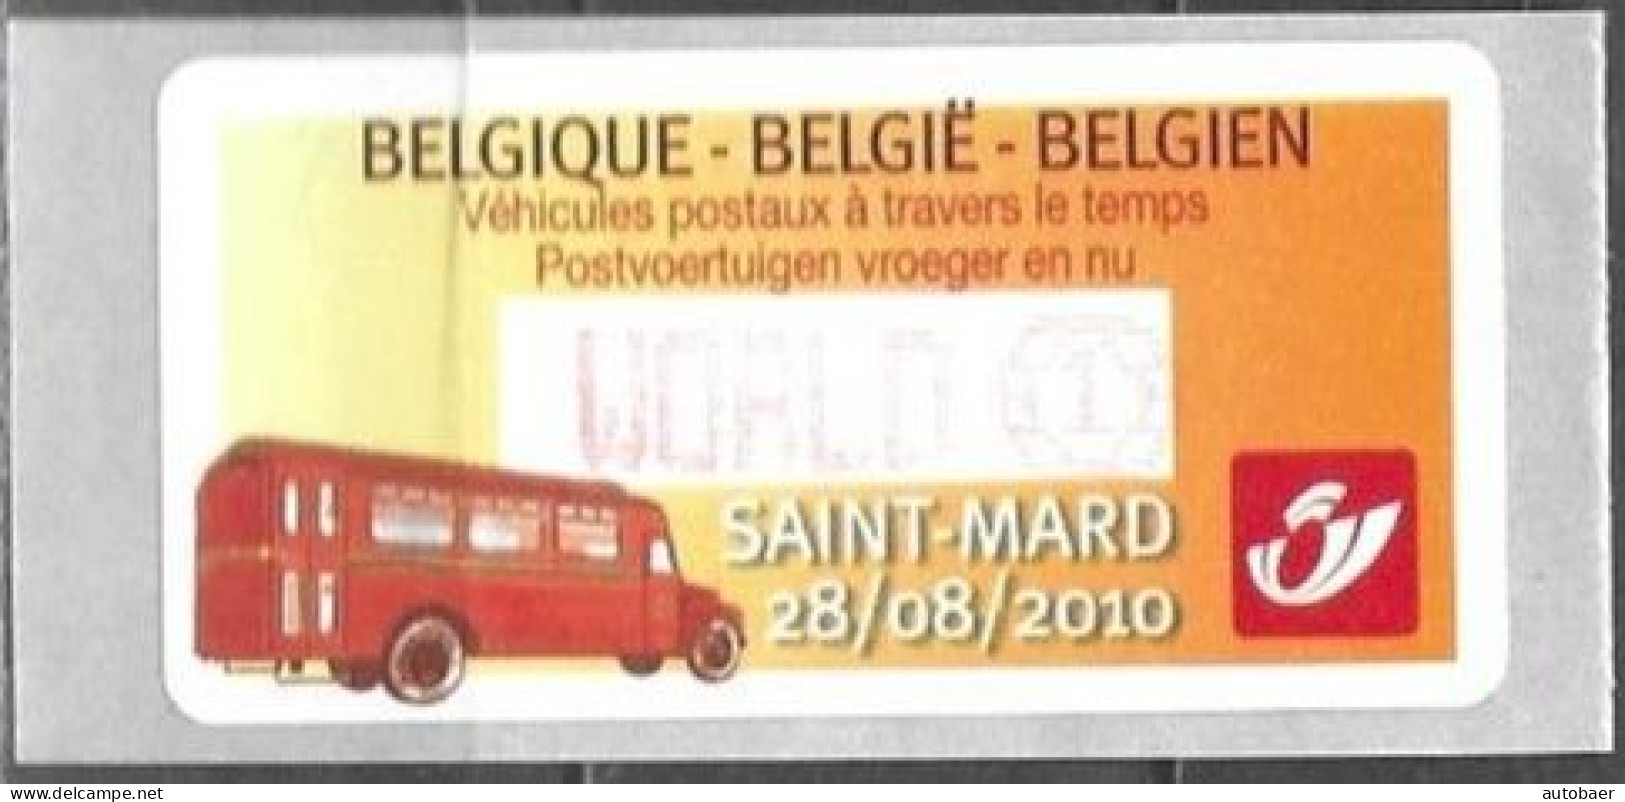 Belgium Belgique Belgien 2010 ATM Machine Stamp Saint-Mard Post Bus Mi. No. 70 "World 1" MNH Neuf ** Postfrisch - Mint